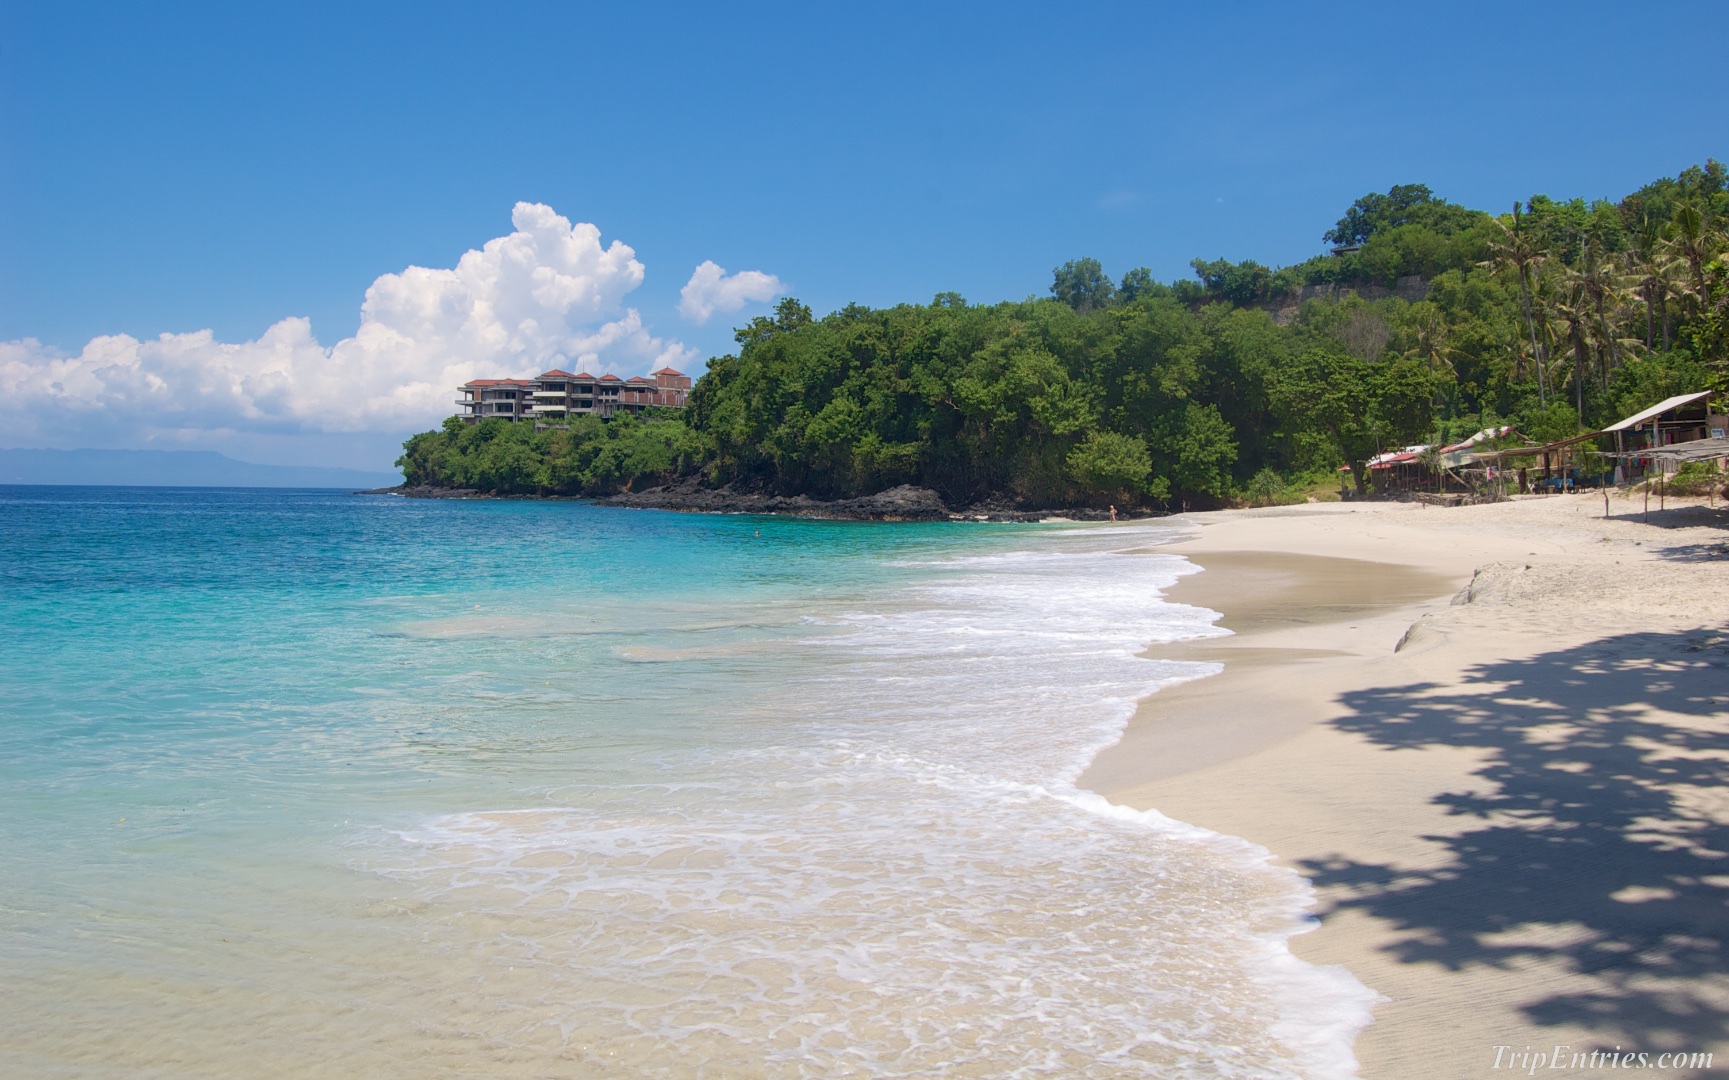 Чандидаса – жемчужина на востоке Бали и White Sand Beach – самый приятный пляж с белым песком